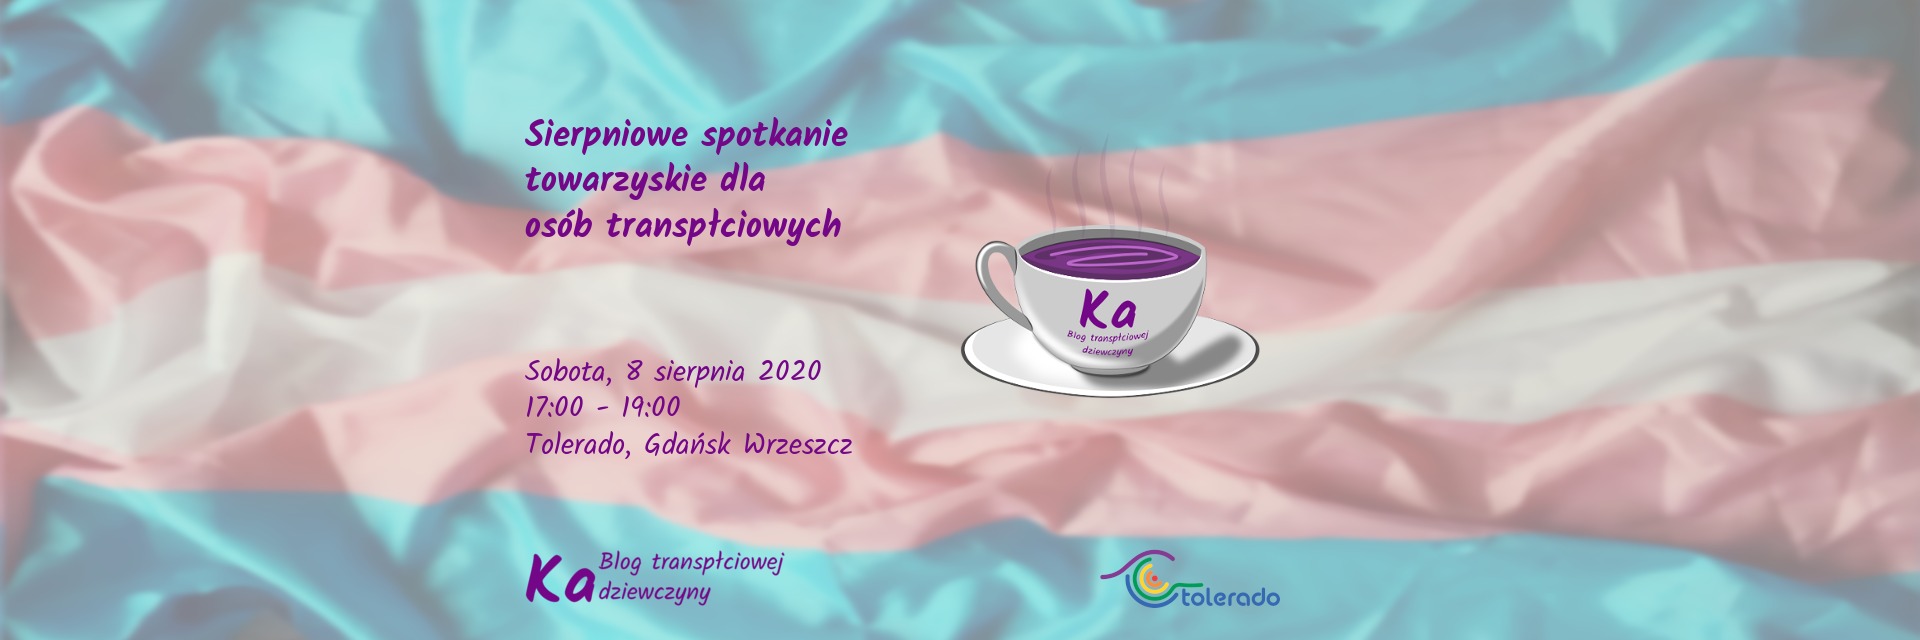 Sierpniowe spotkanie towarzyskie dla osób transpłciowych 2020